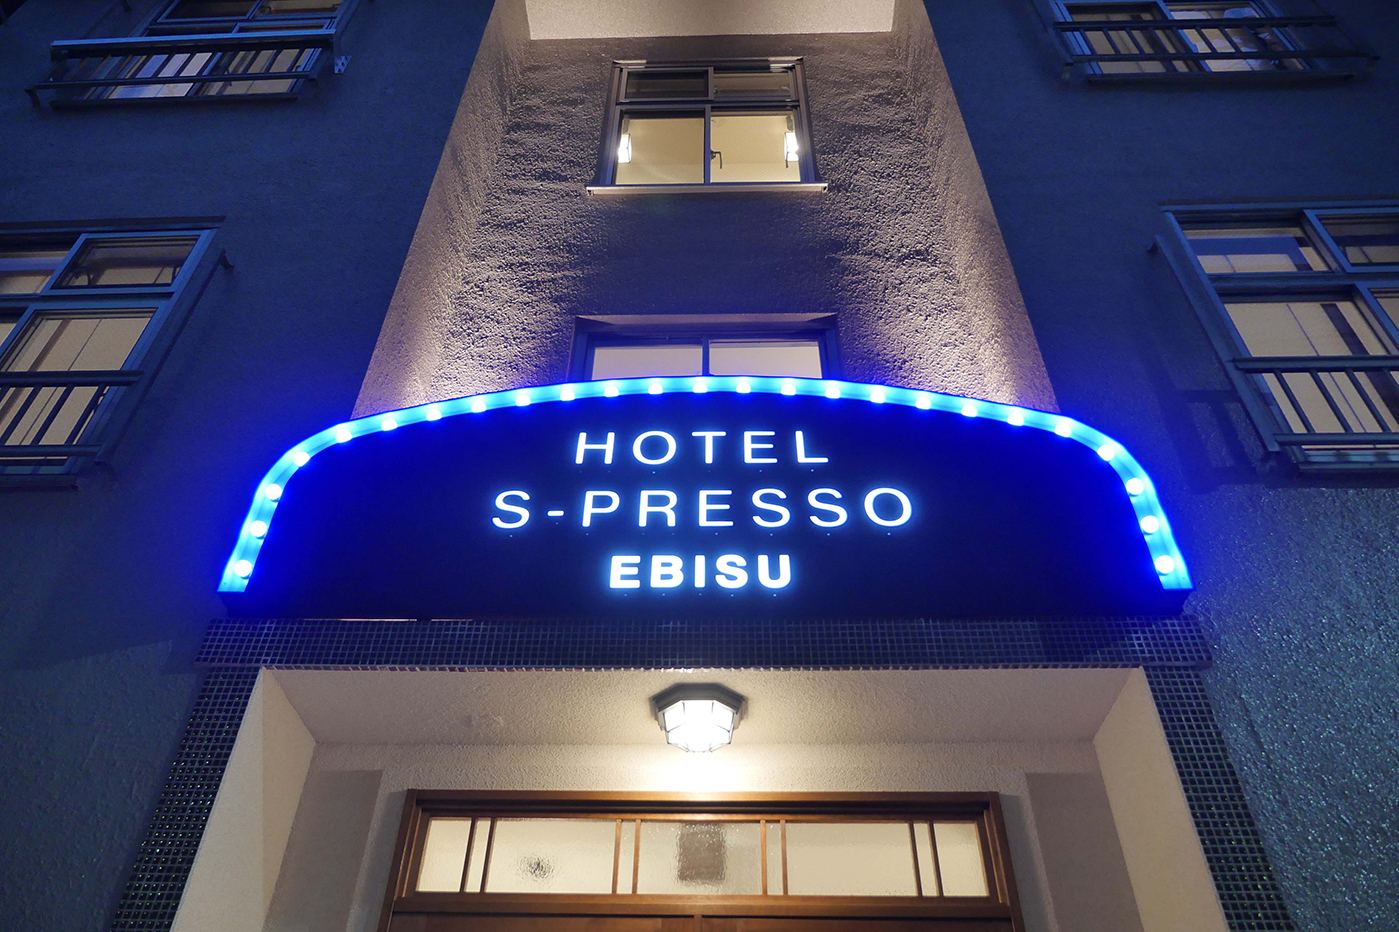 HOTEL S-PRESSO EBISU<span>- ホテルエスプレッソエビス -</span>